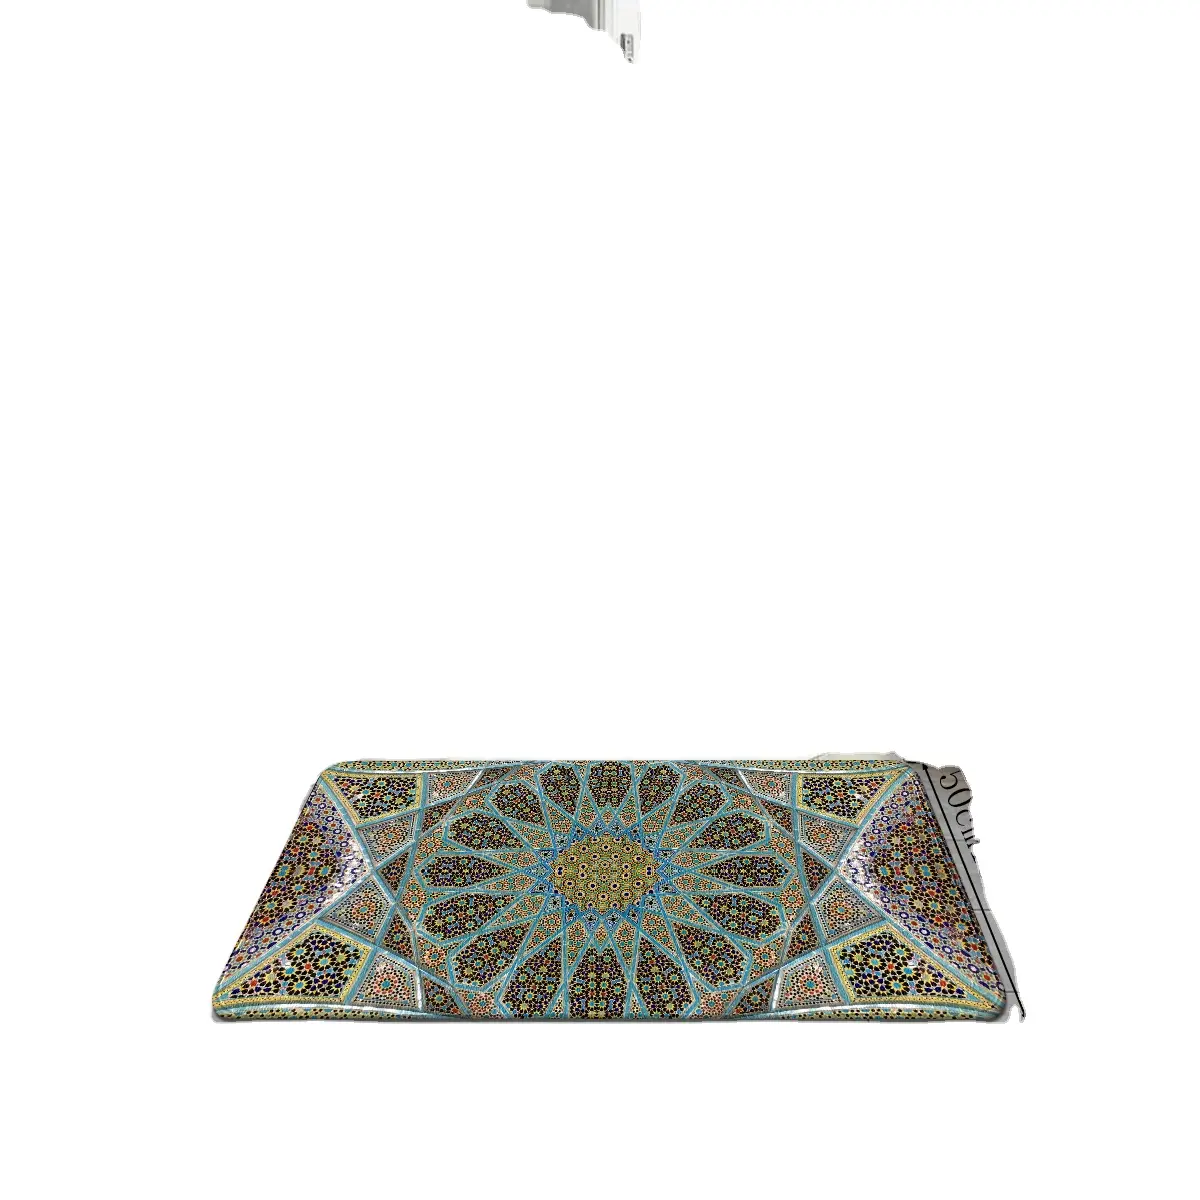 프린트된 폴리에스테르 카펫, 패턴은 밝고 다채롭고, 미끄럼 방지 흡수성과 부드럽고 빨 수 있는 주방, 현관문 카펫